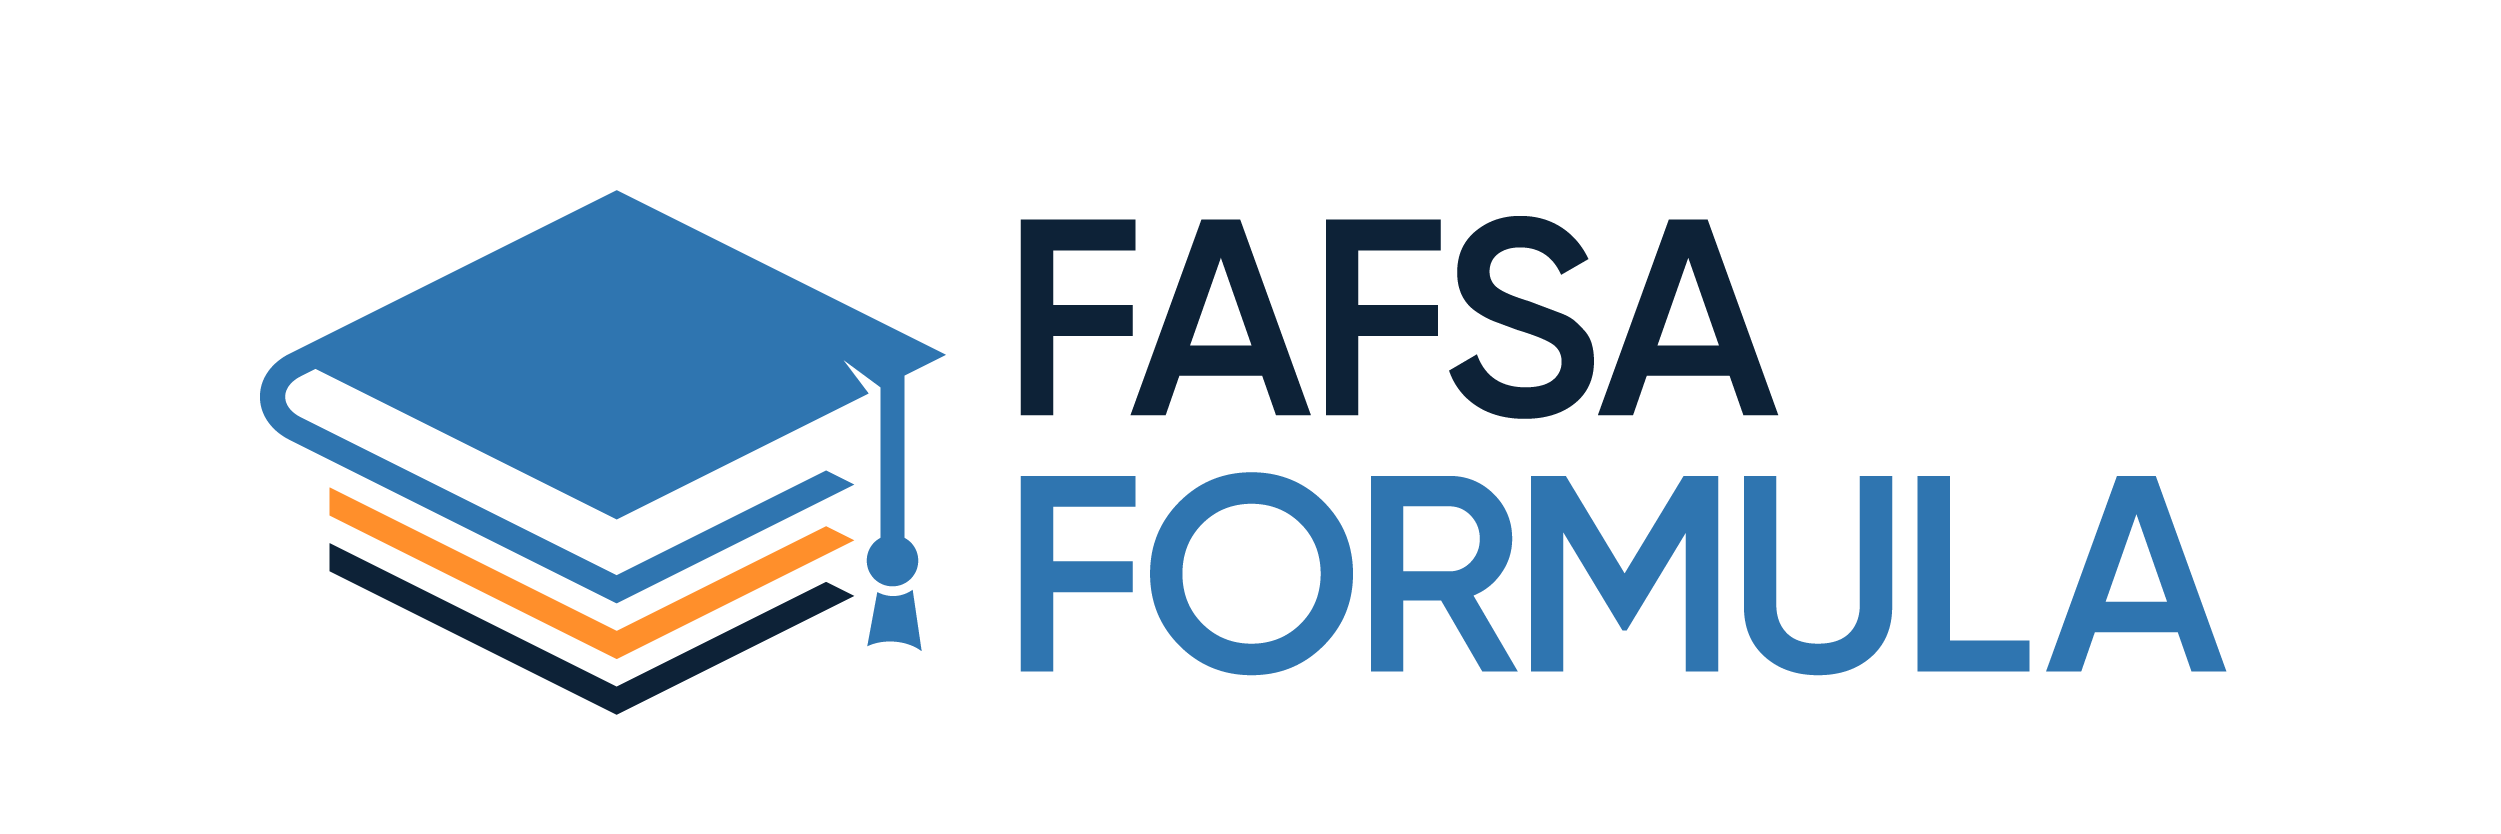 FAFSA Formula